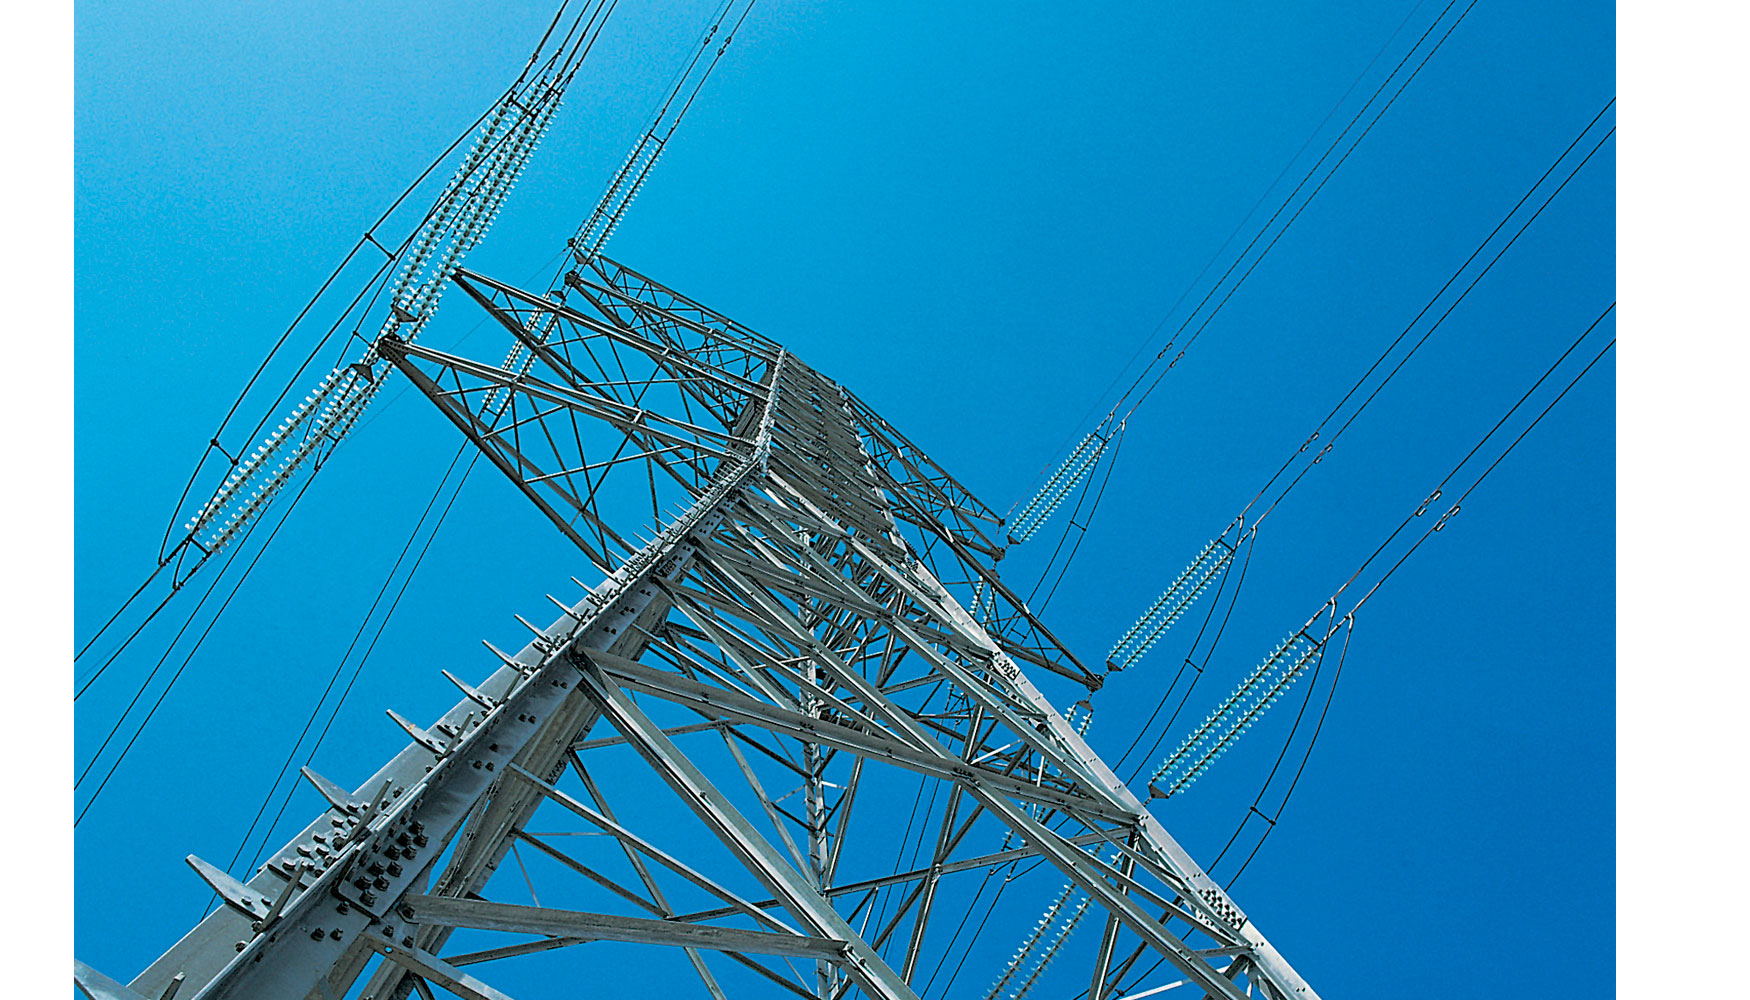 La nueva lnea de 220 kilovoltios (kV) conecta la subestacin Plaza con la lnea de 220 kV Entrerros-Montetorrero...